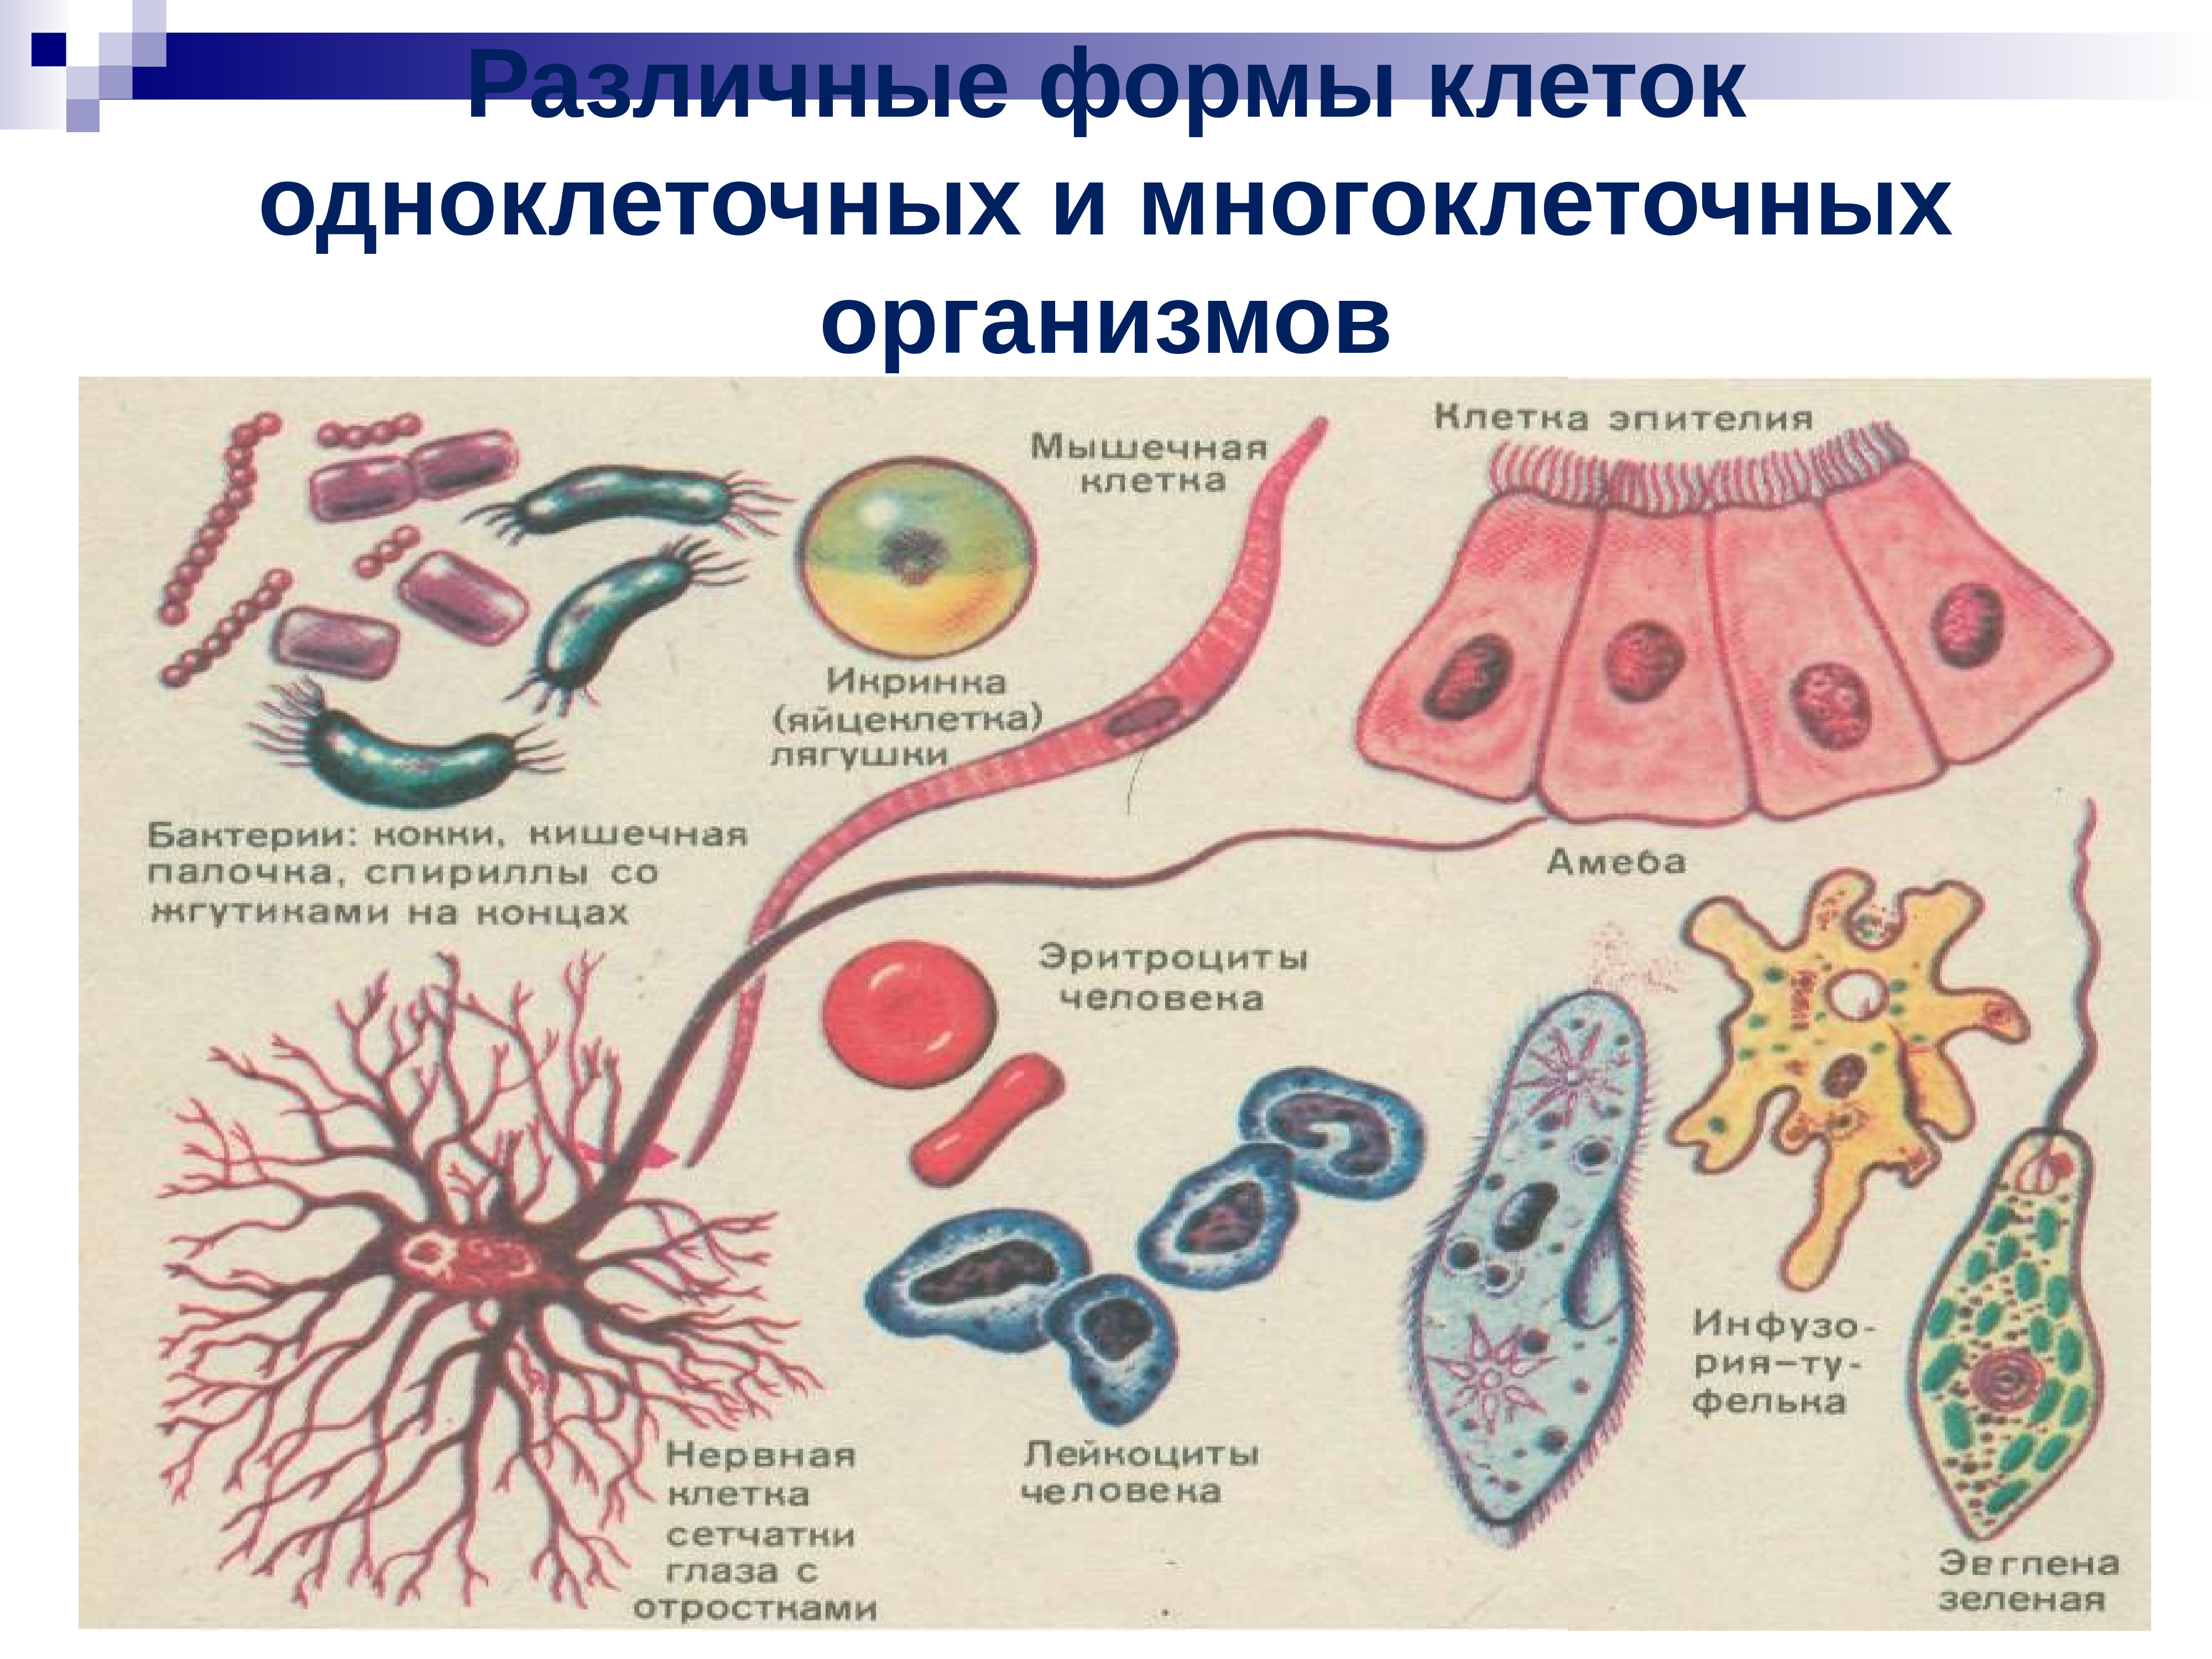 Ткани одноклеточных организмов и многоклеточных организмов